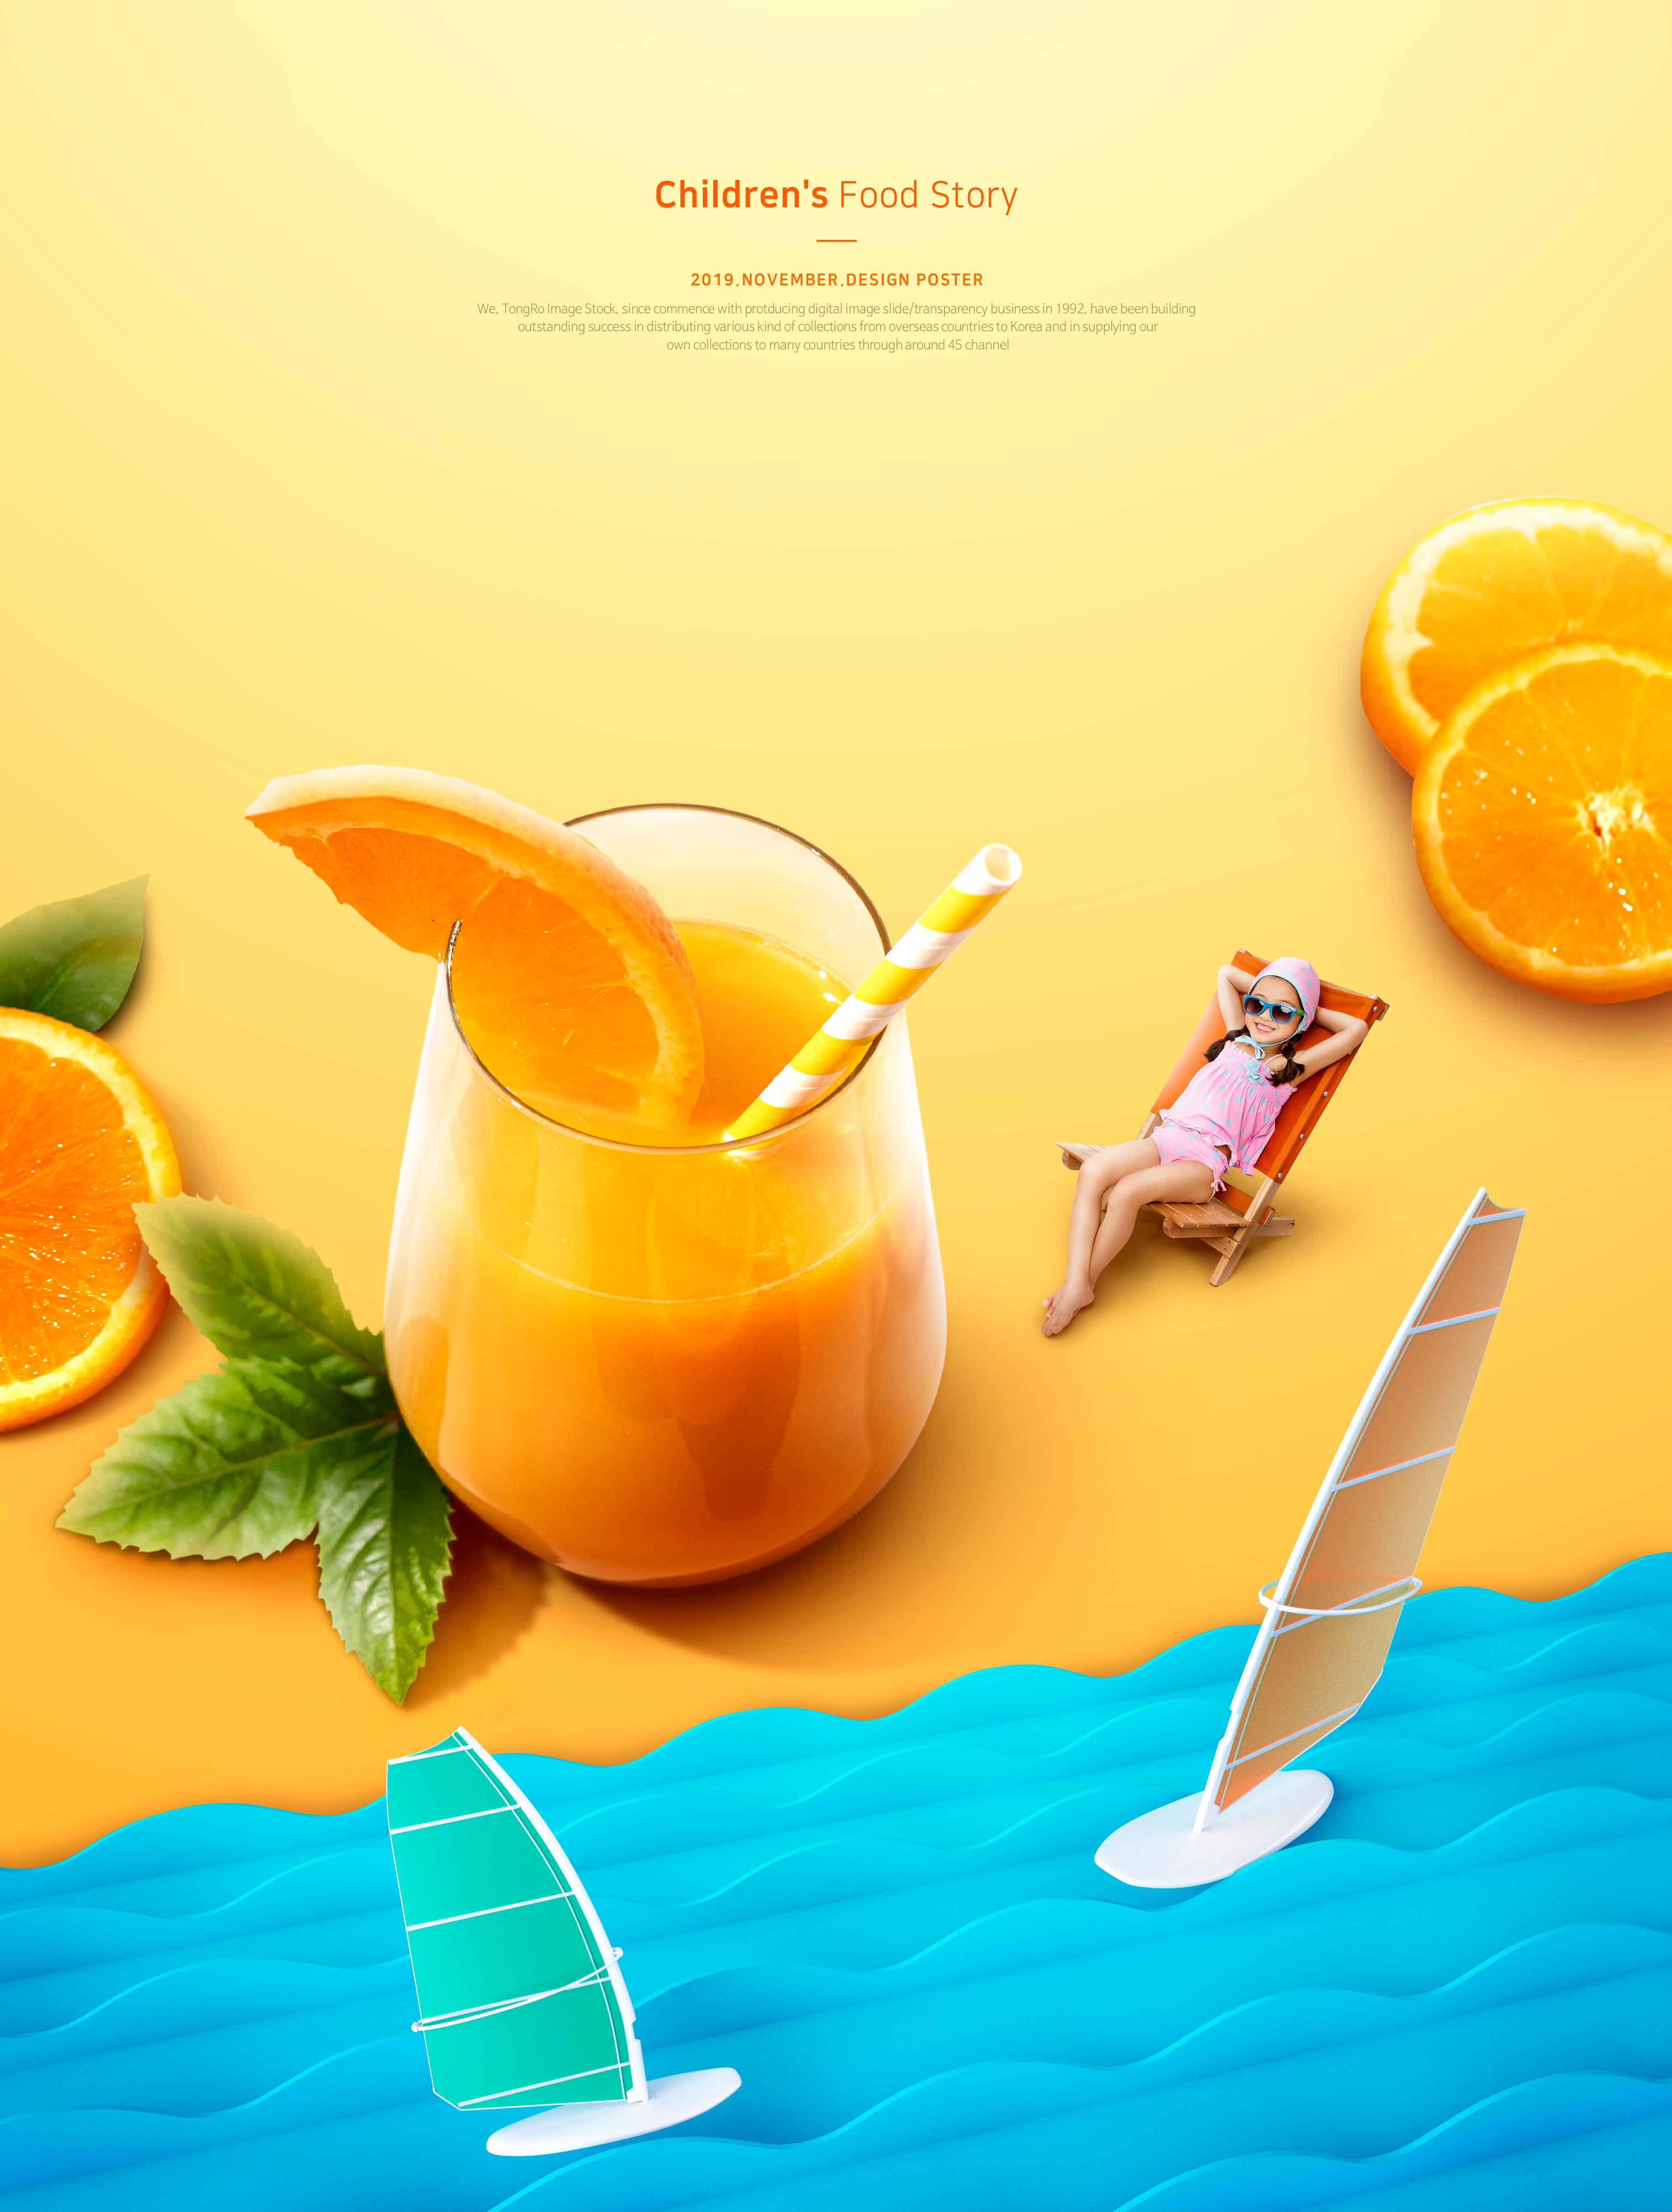 儿童食品故事夏季橙汁推广海报PSD素材蚂蚁素材精选模板插图